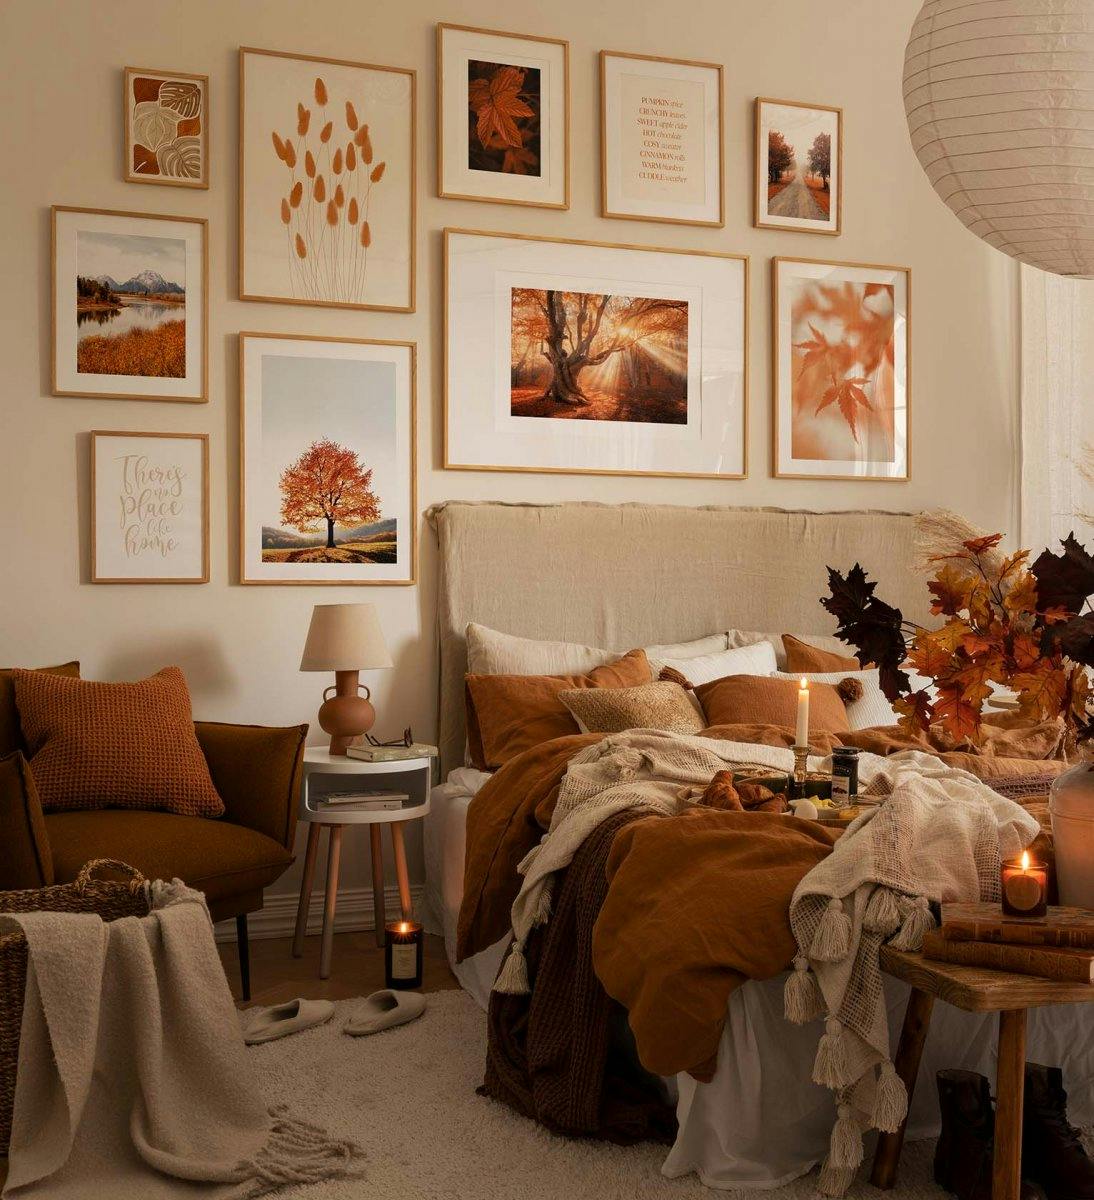 Pared de galería de inspiración otoñal con láminas y fotografías en naranja y marcos de roble para el dormitorio